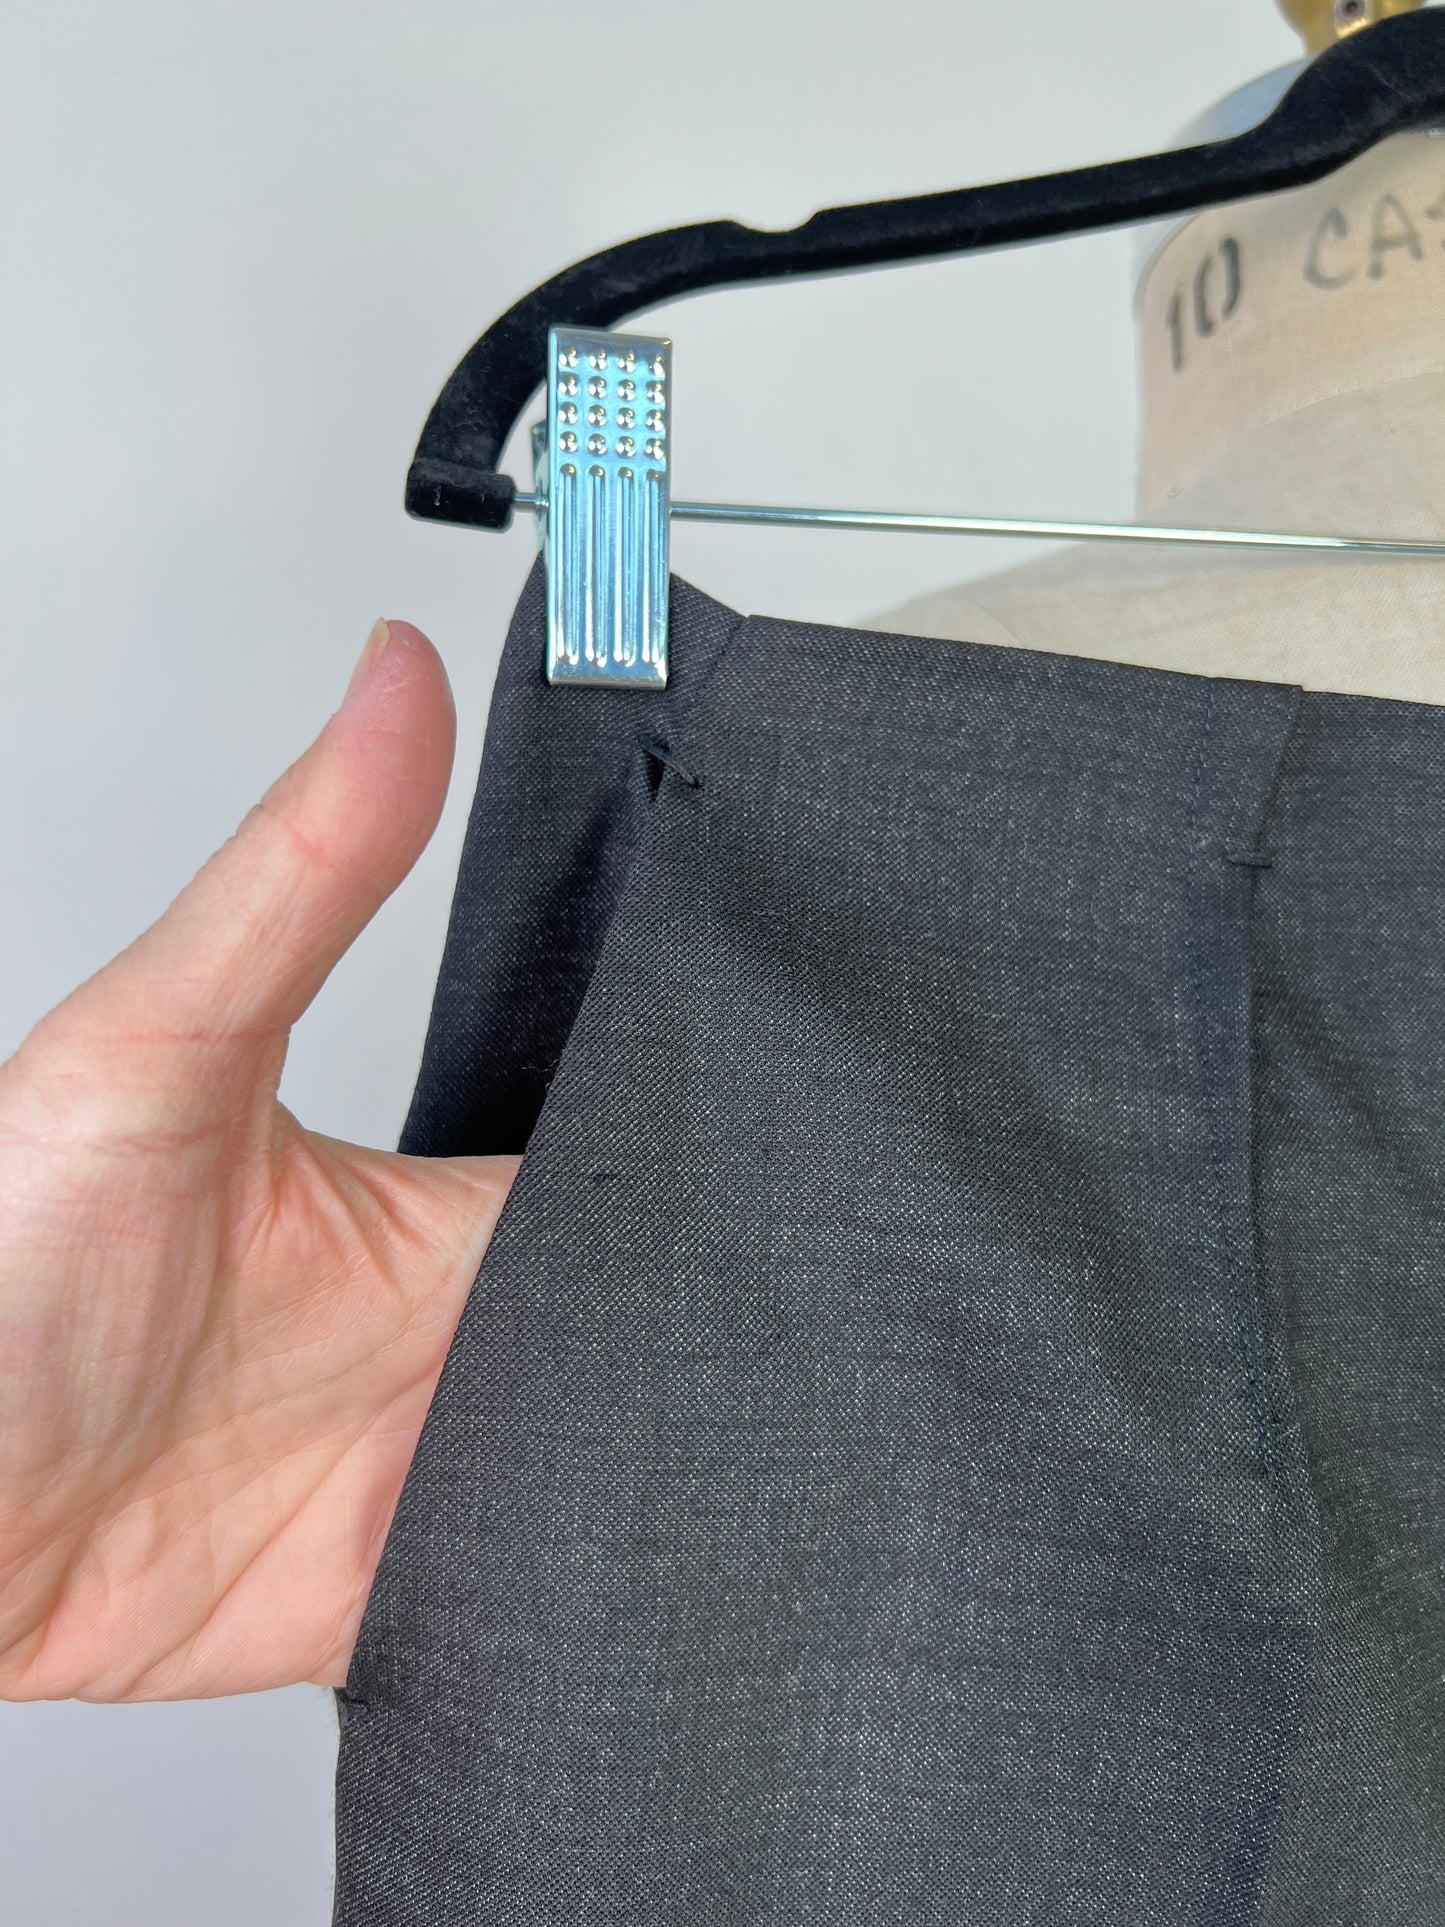 Pantalon minimaliste anthracite en laine vierge extensible (M)